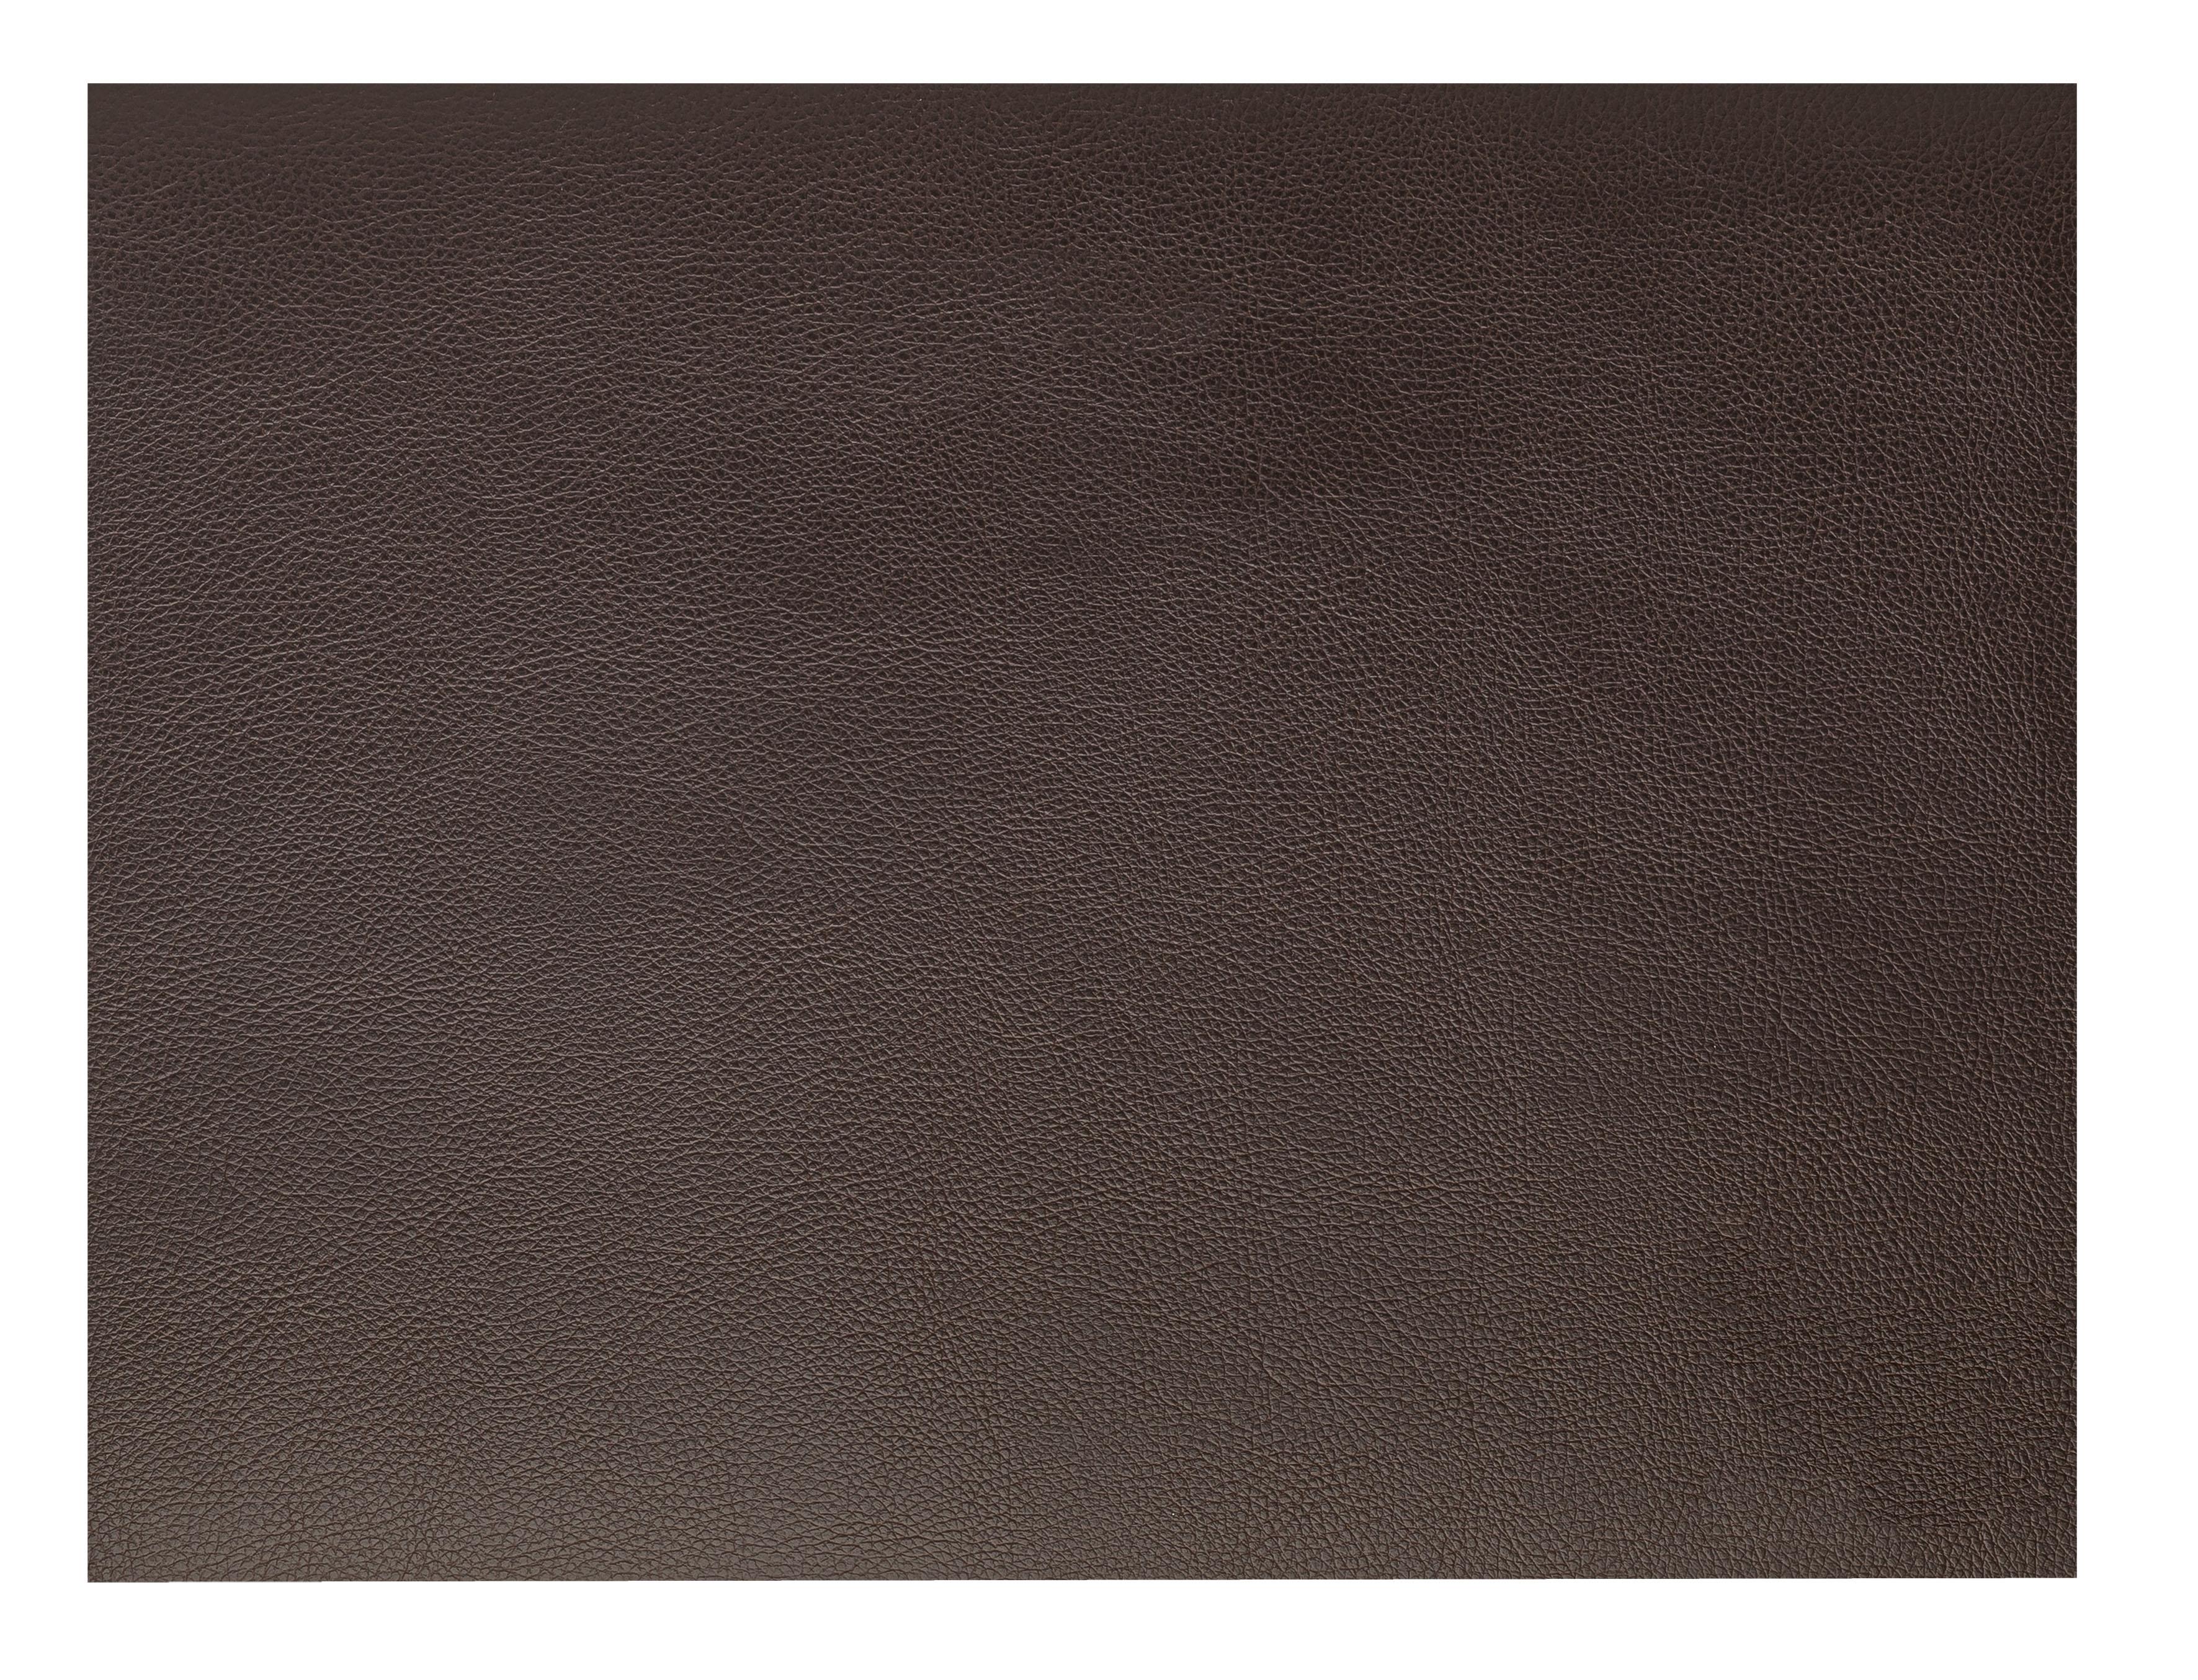 45x30 см, 100 % переработанная кожа, декор grained brown / зернистый коричневый